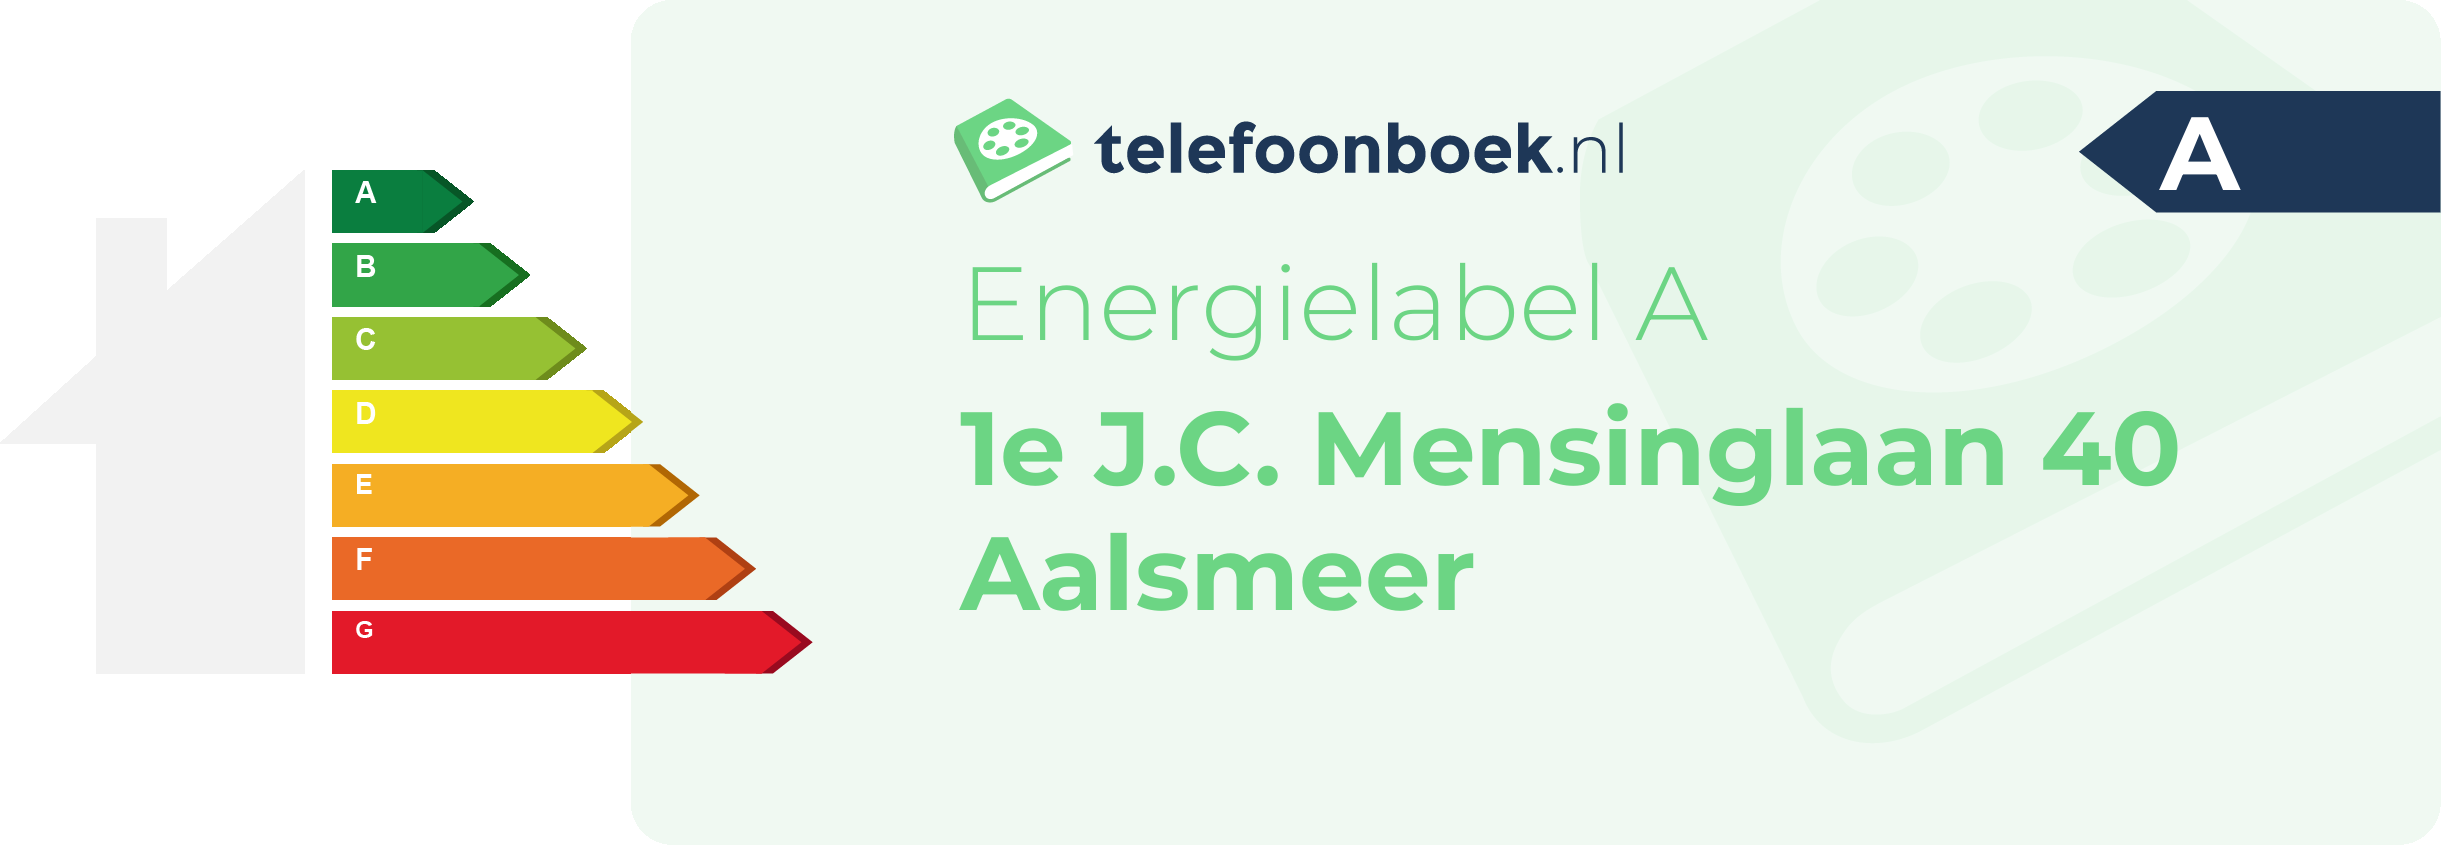 Energielabel 1e J.C. Mensinglaan 40 Aalsmeer